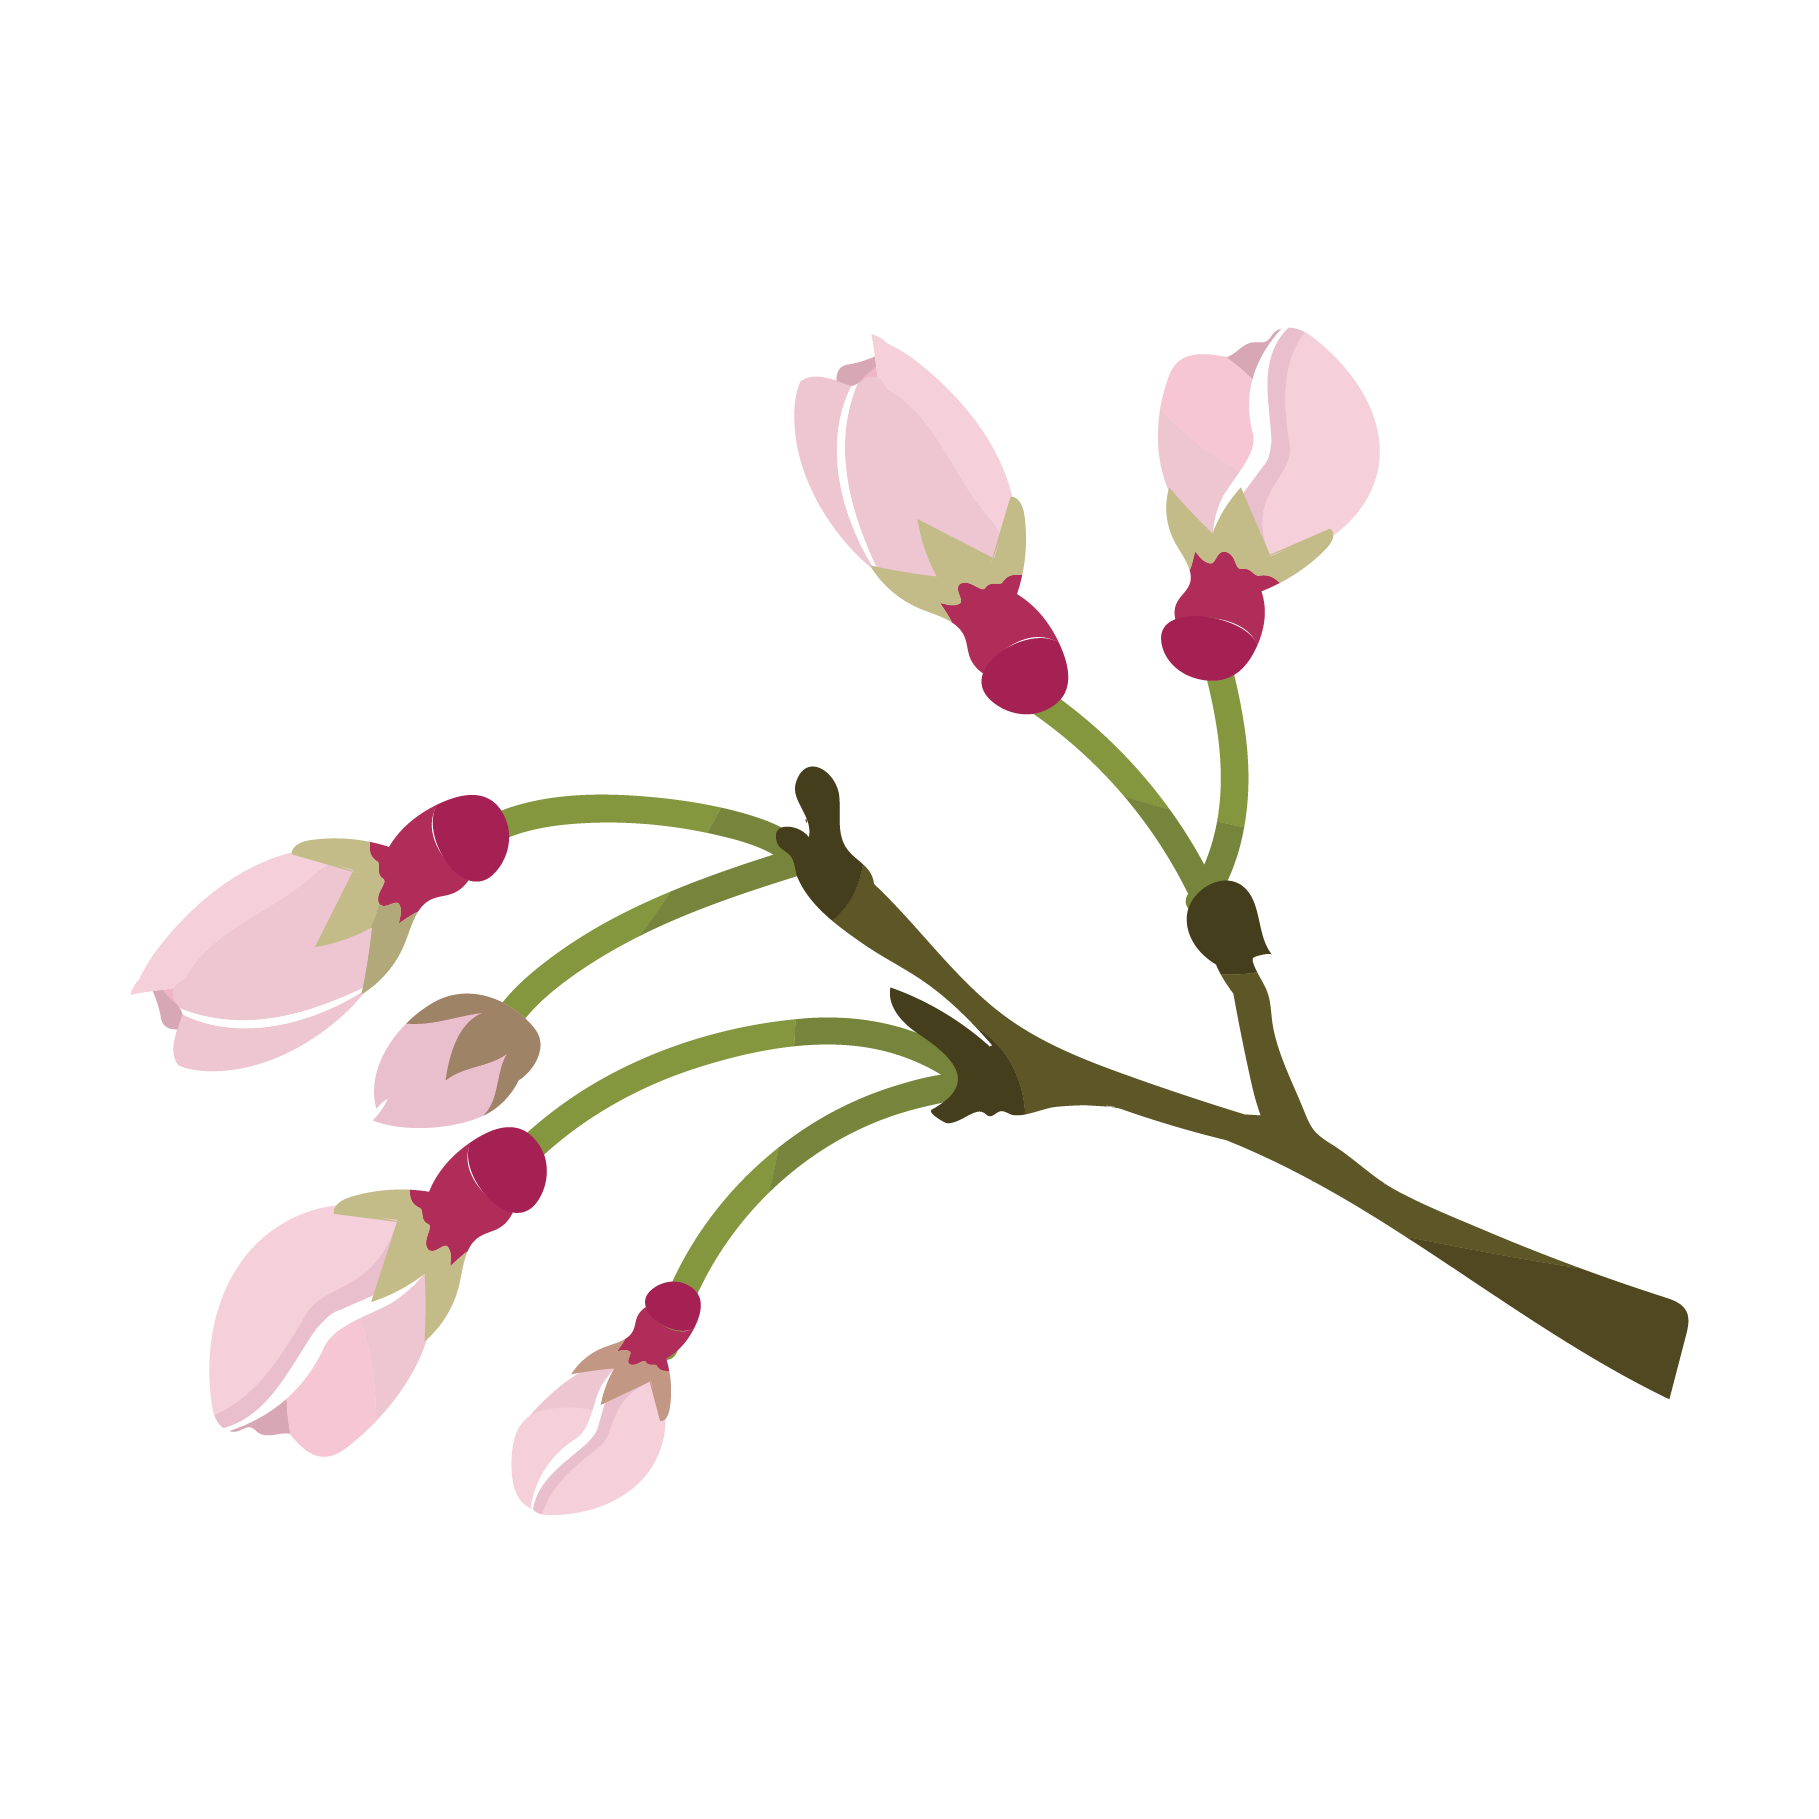 かわいい桜 さくら サクラ の蕾 つぼみ のイラスト 商用フリー 無料 のイラスト素材なら イラストマンション